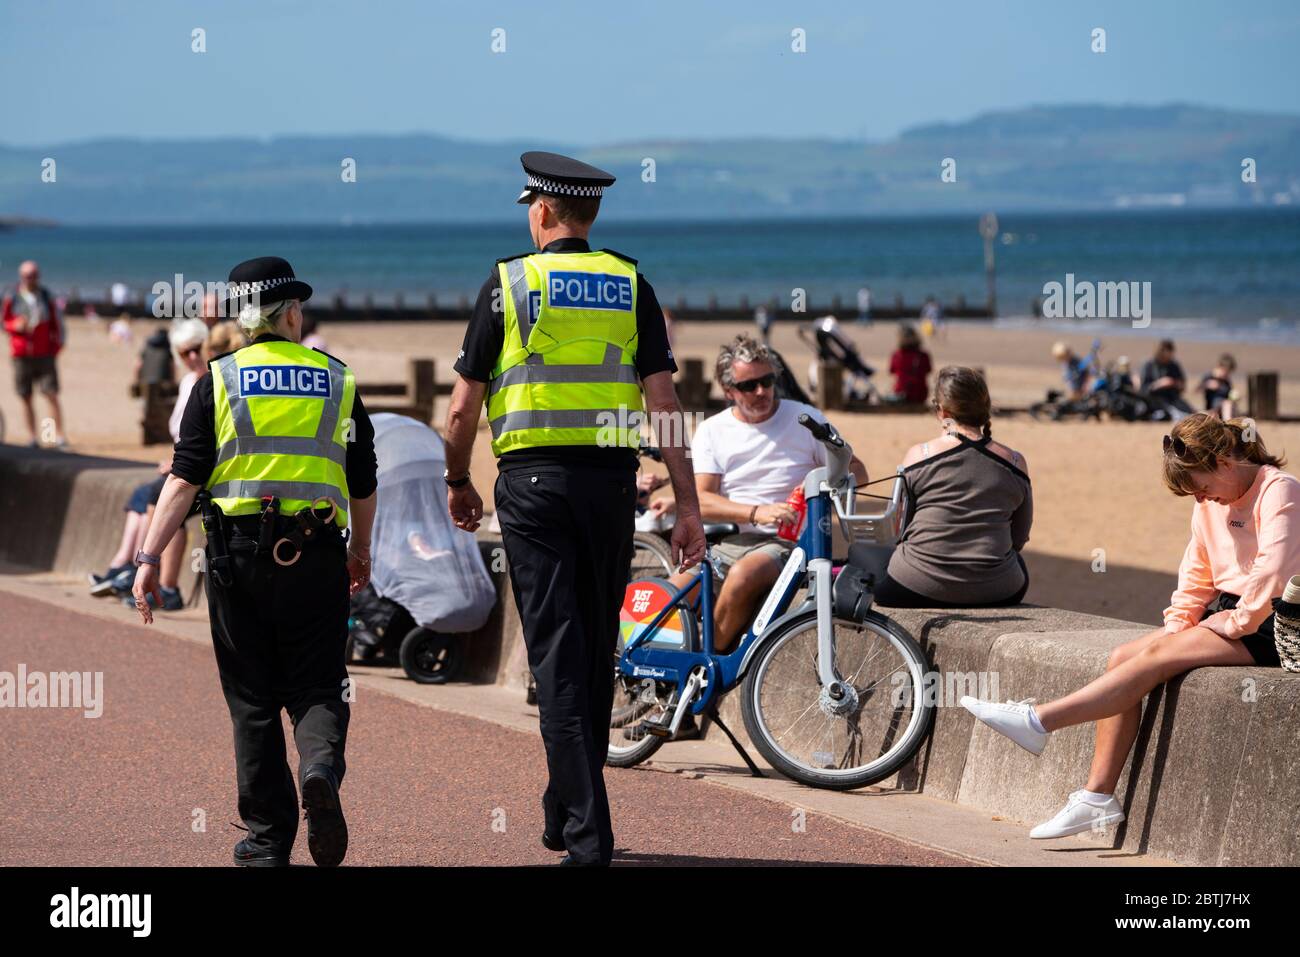 Portobello, Écosse, Royaume-Uni. 26 mai 2020. La plage et la promenade de Portobello étaient relativement calmes malgré le temps chaud et ensoleillé. Les patrouilles de police à pied étaient à clé basse et les agents ne demandaient pas à de nombreux membres du public de continuer. Iain Masterton/Alay Live News Banque D'Images